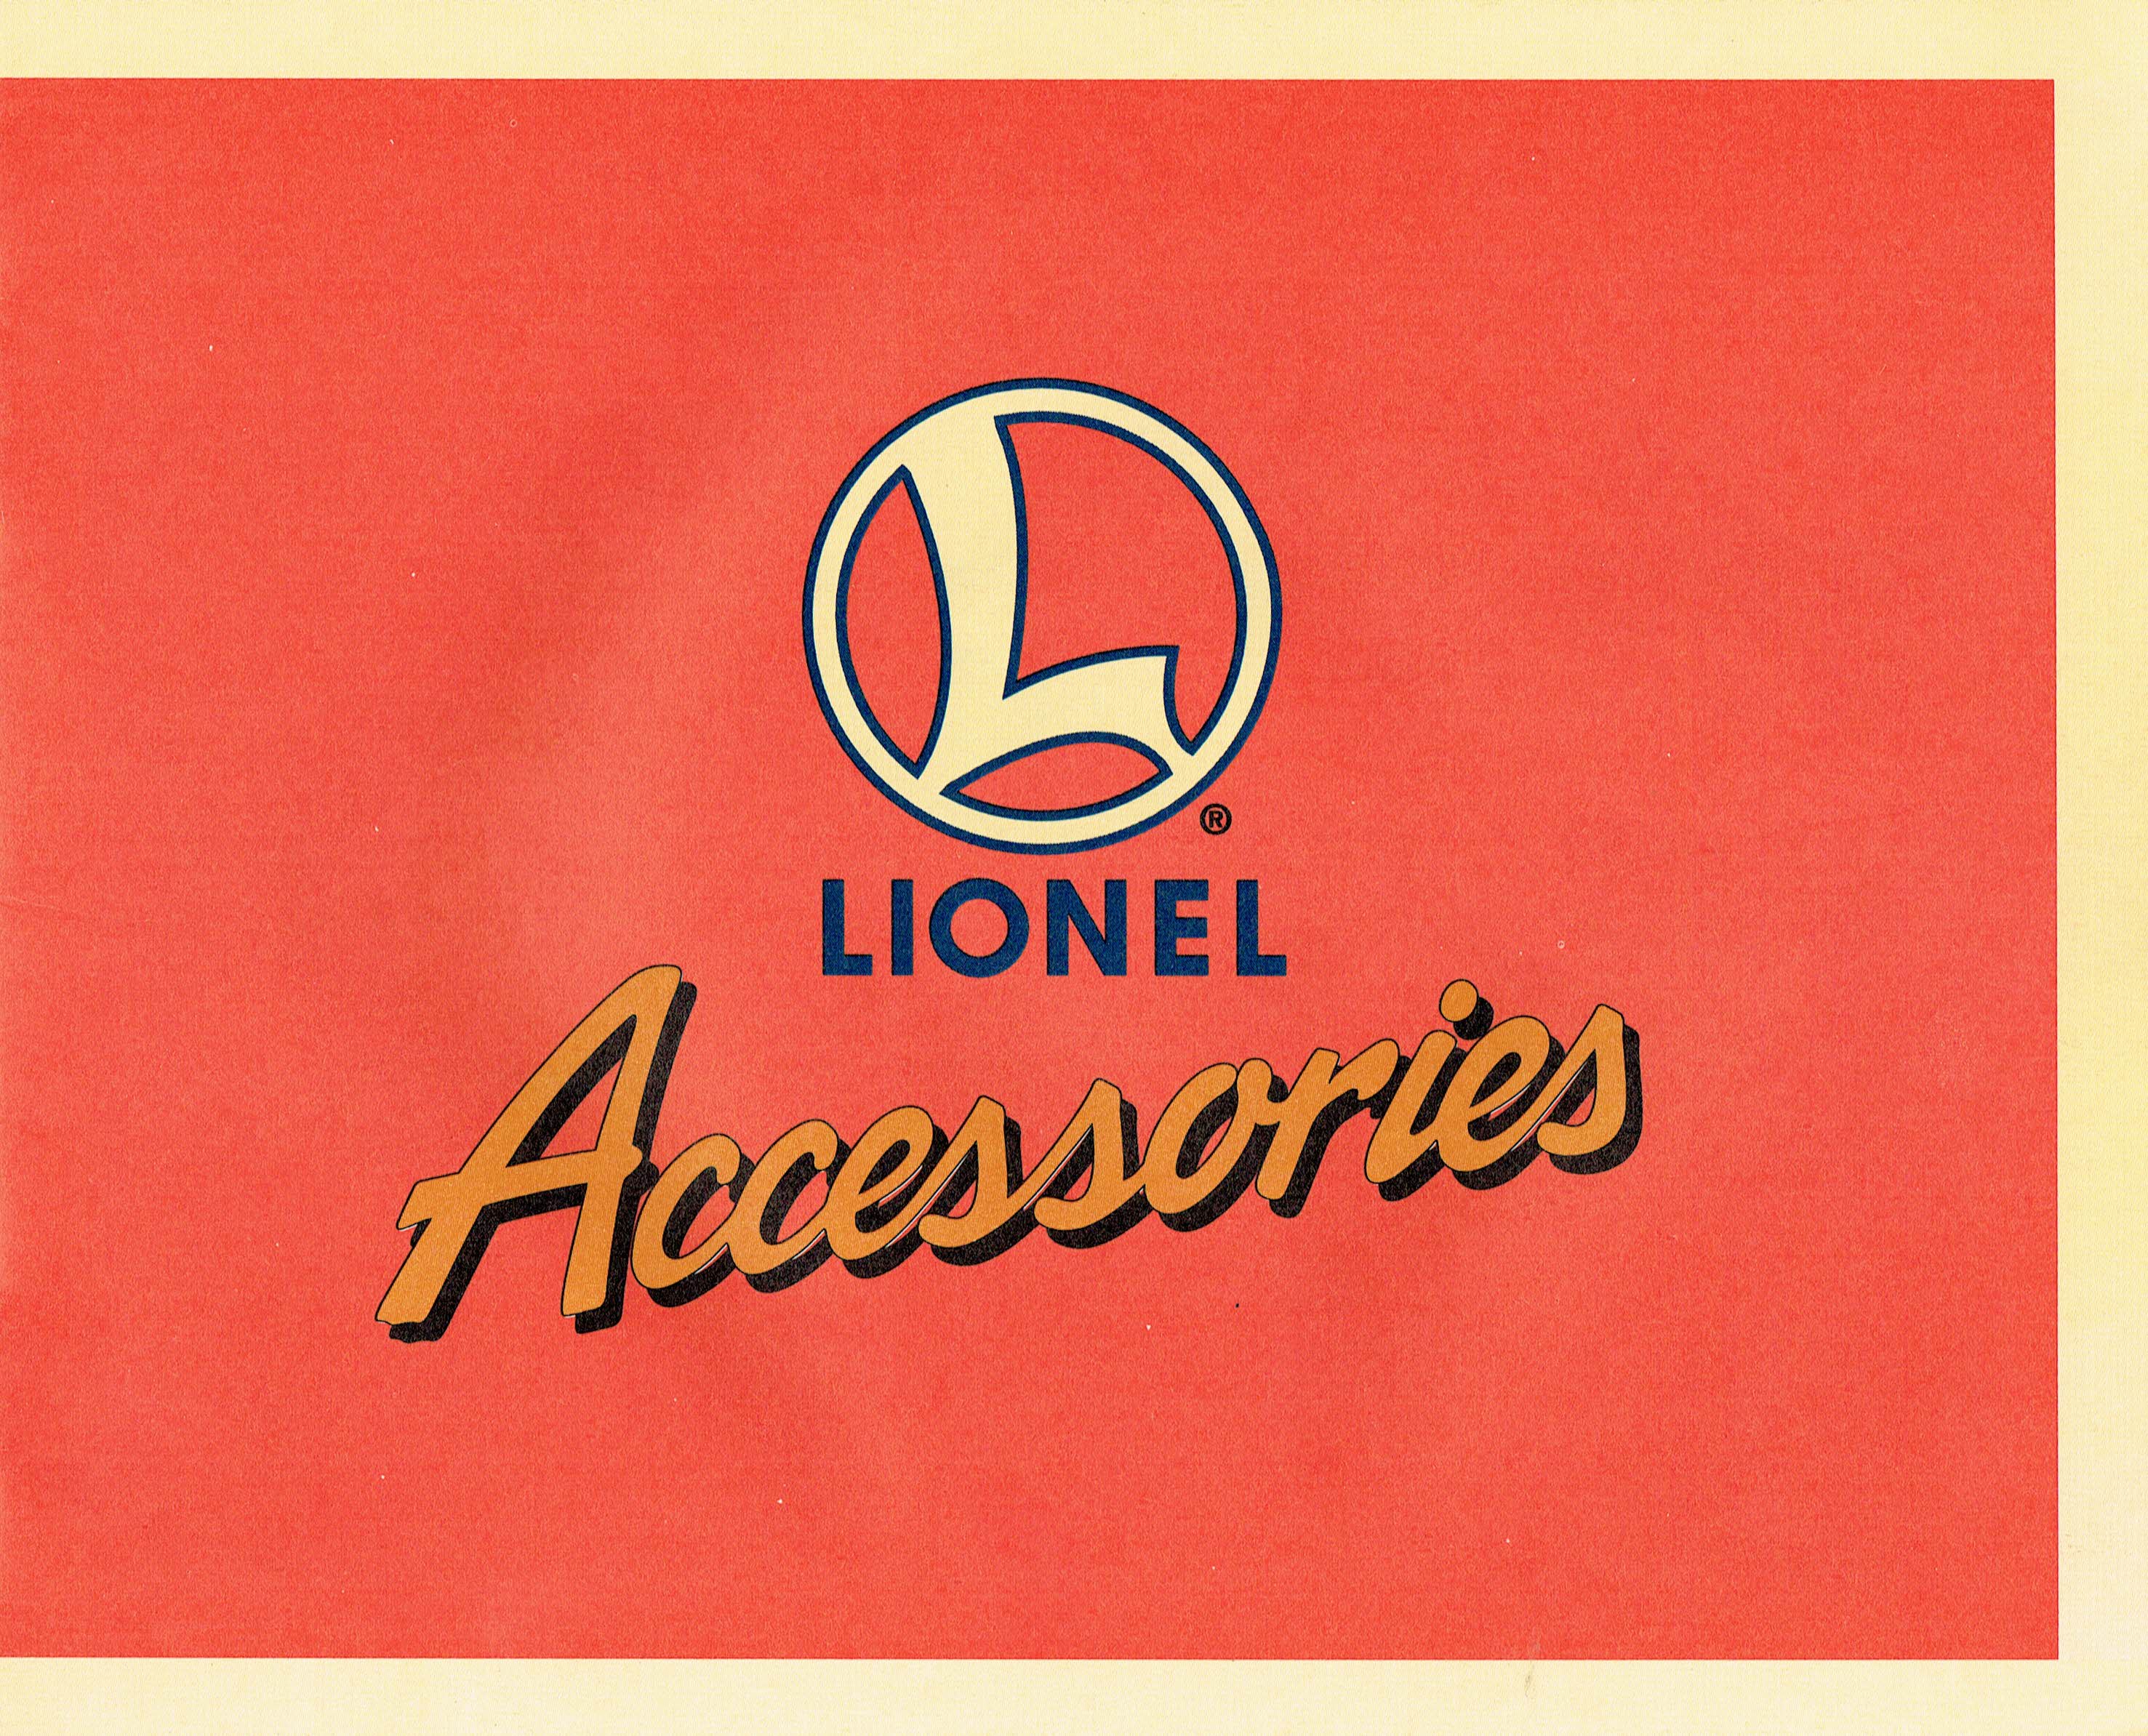 Lionel 1996 Accessories Catalog image